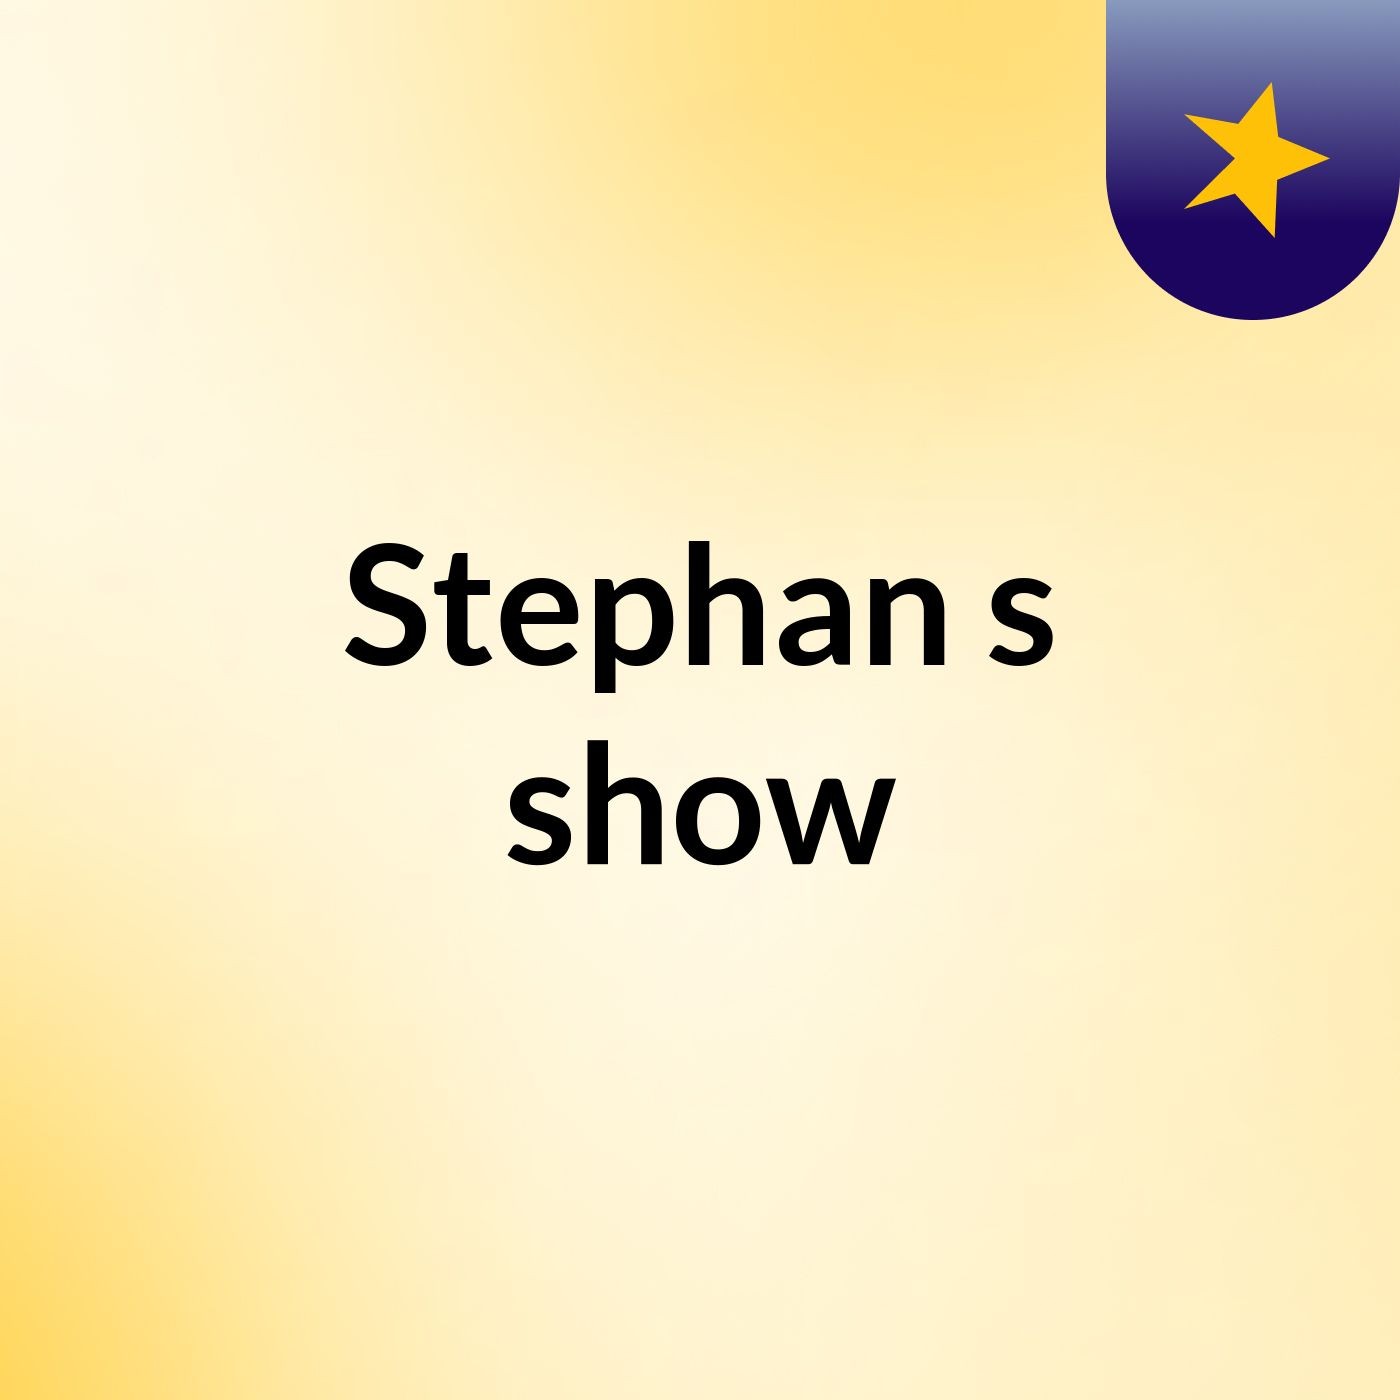 Stephan's show